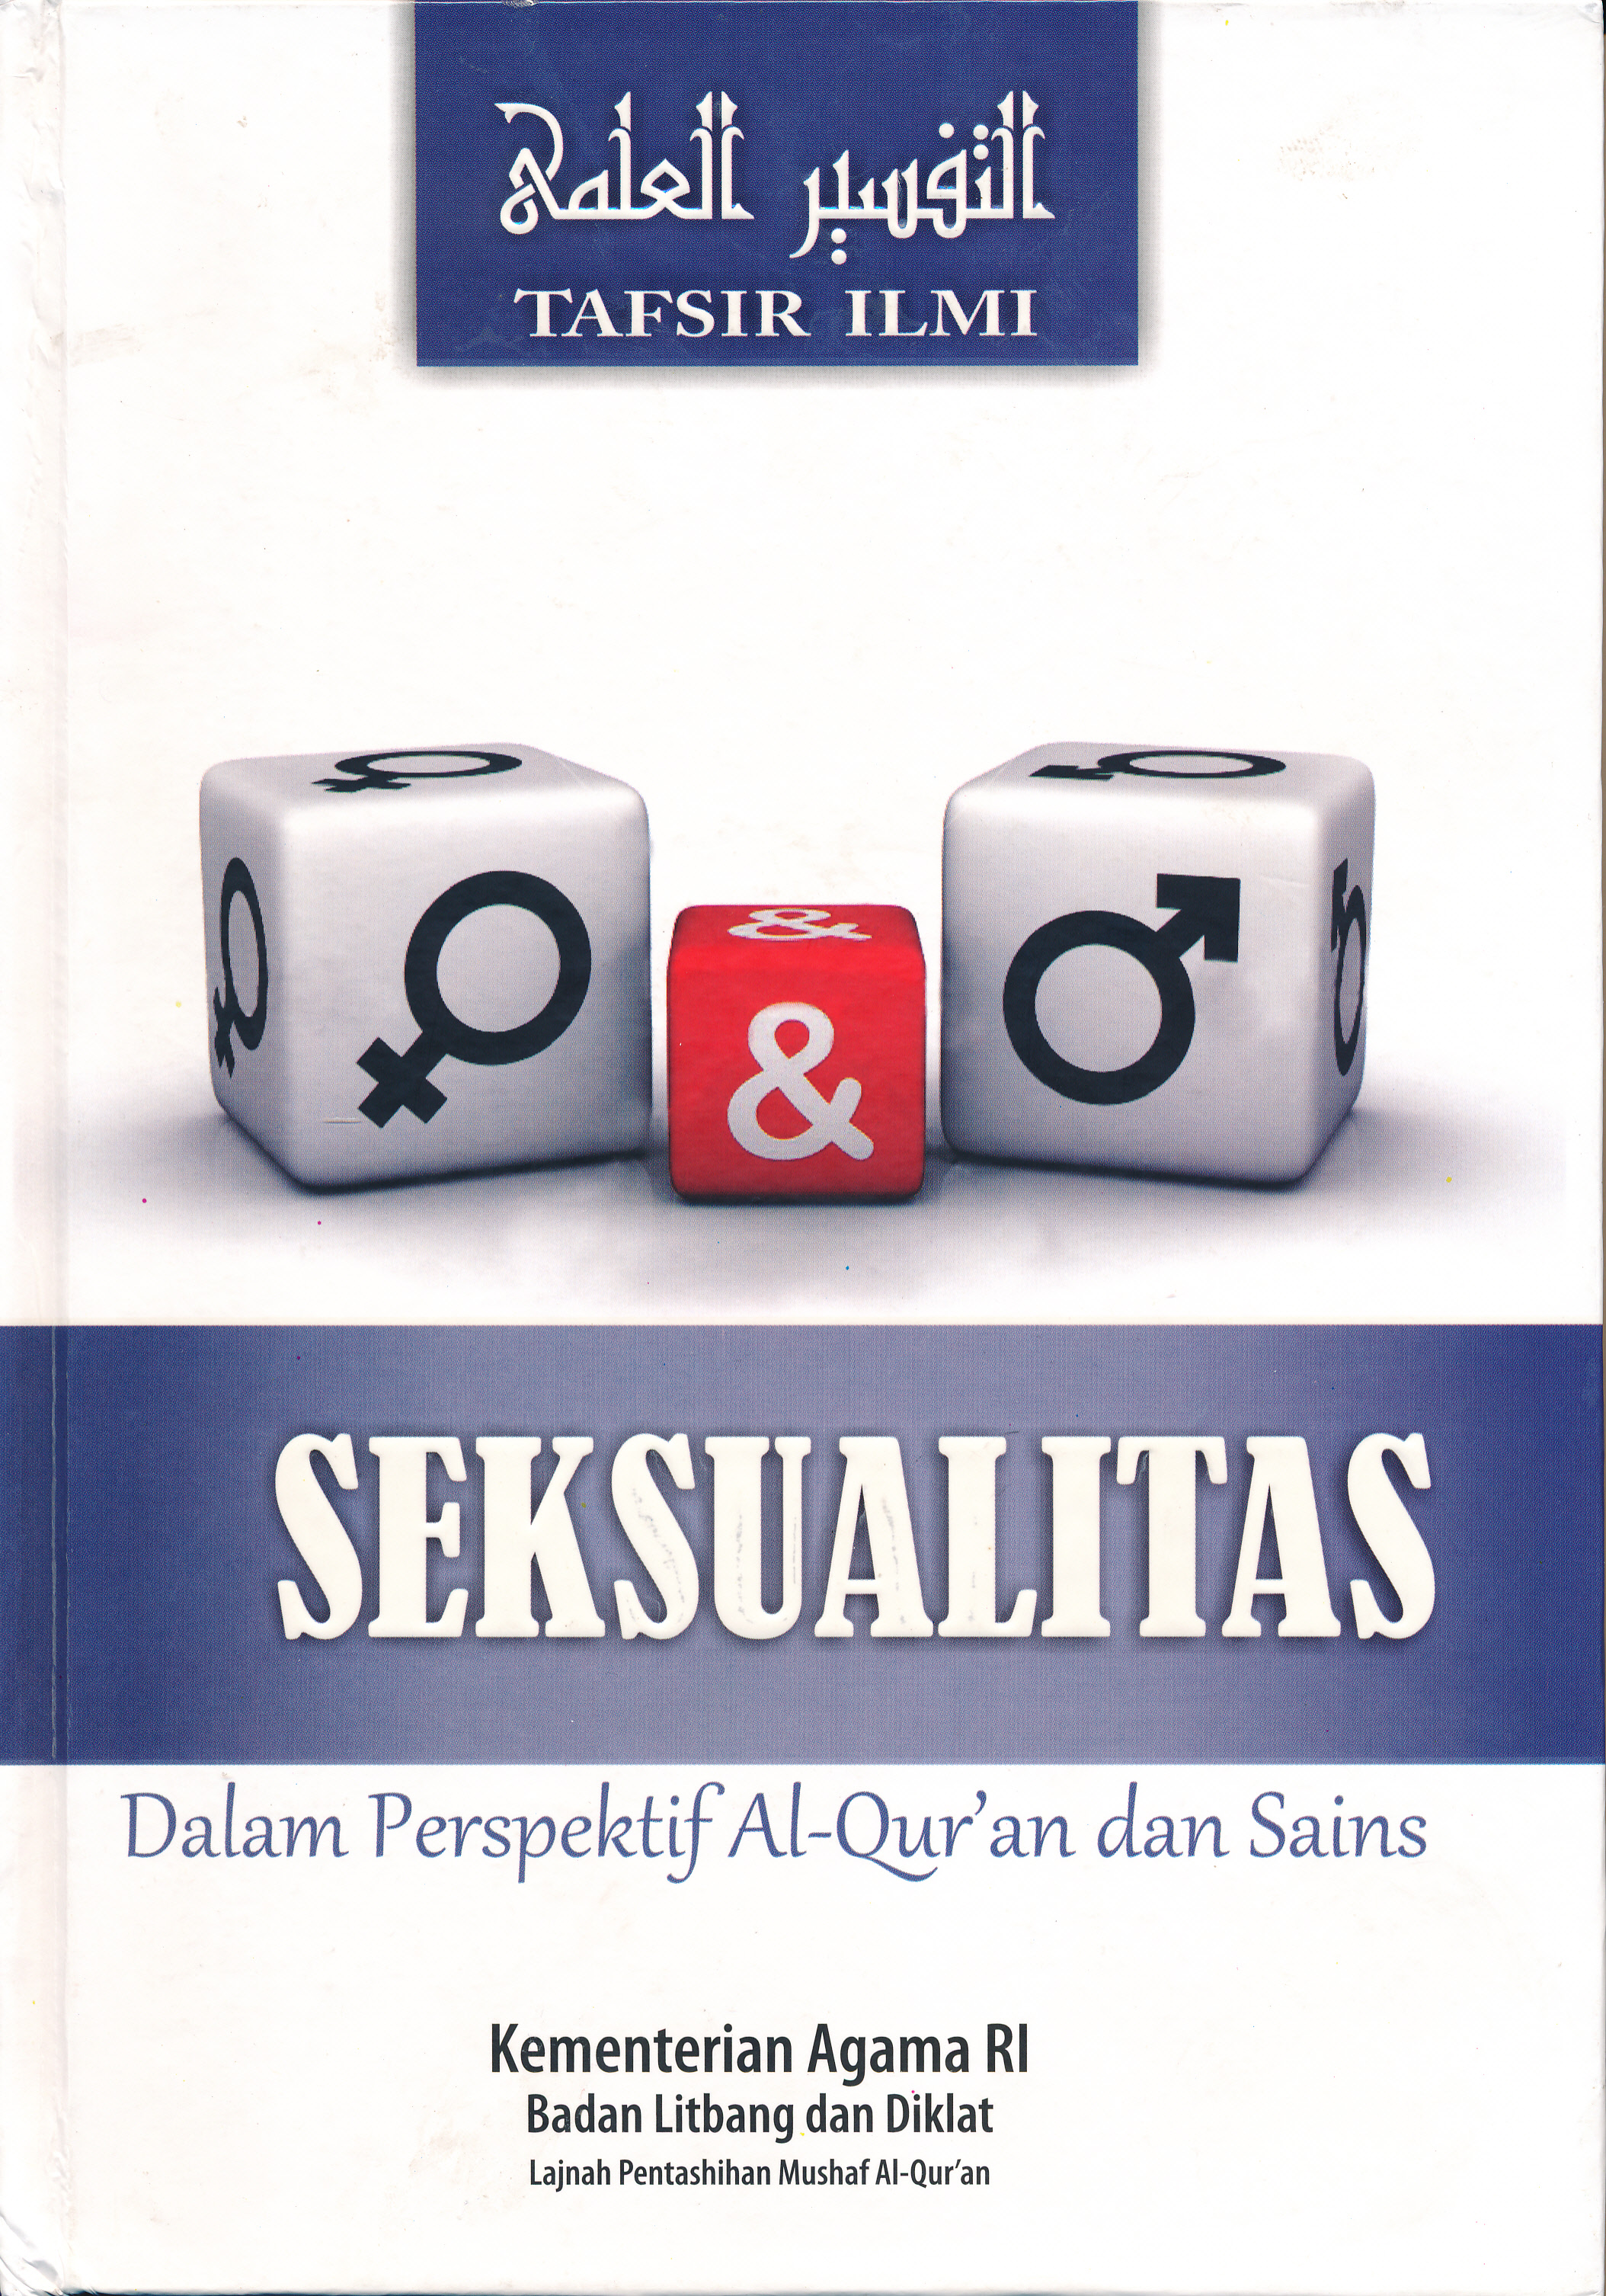 SEKSUALITAS Dalam Perspektif Al-Qur'an dan Sains